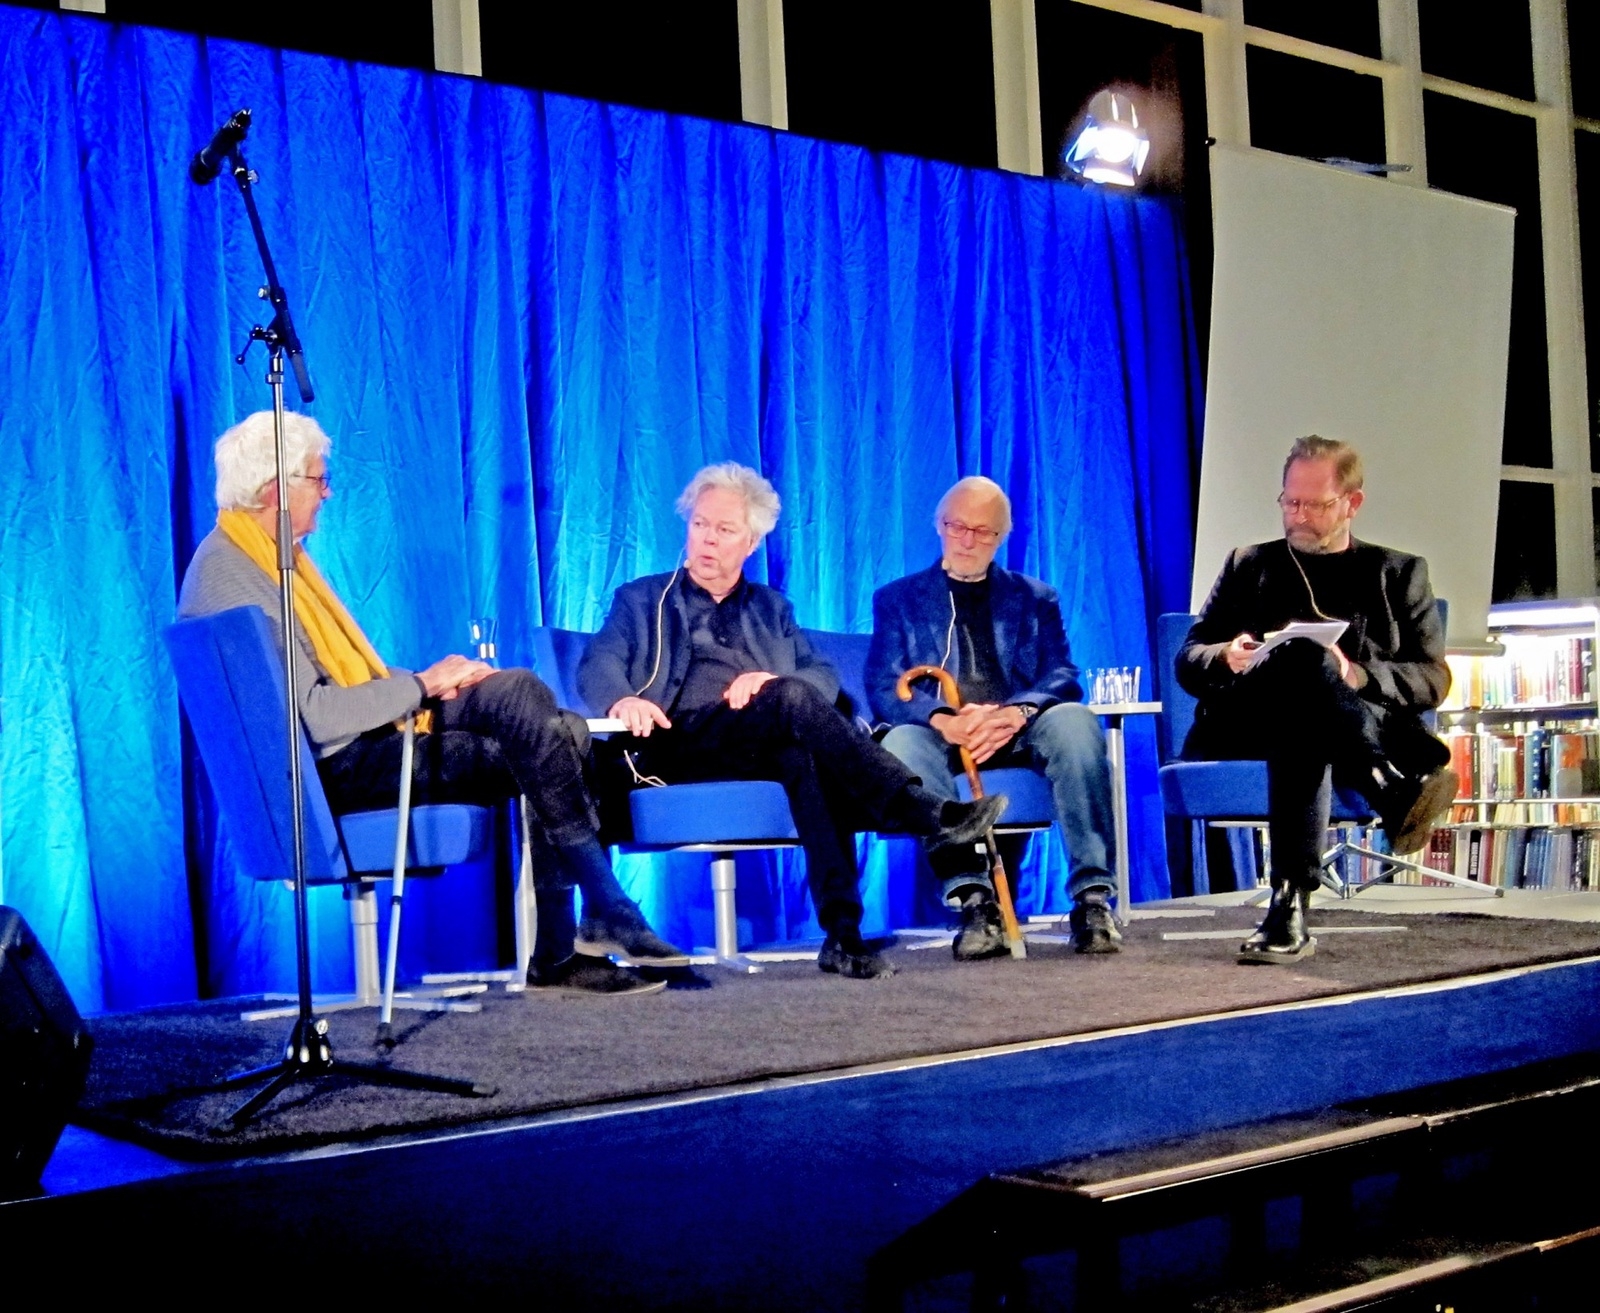 Samtal Werups vänner emellan... Från vänster: Lasse Söderberg, Hans Pålsson, Jan Troell och Daniel Sandström. Foto: Clemens Altgård